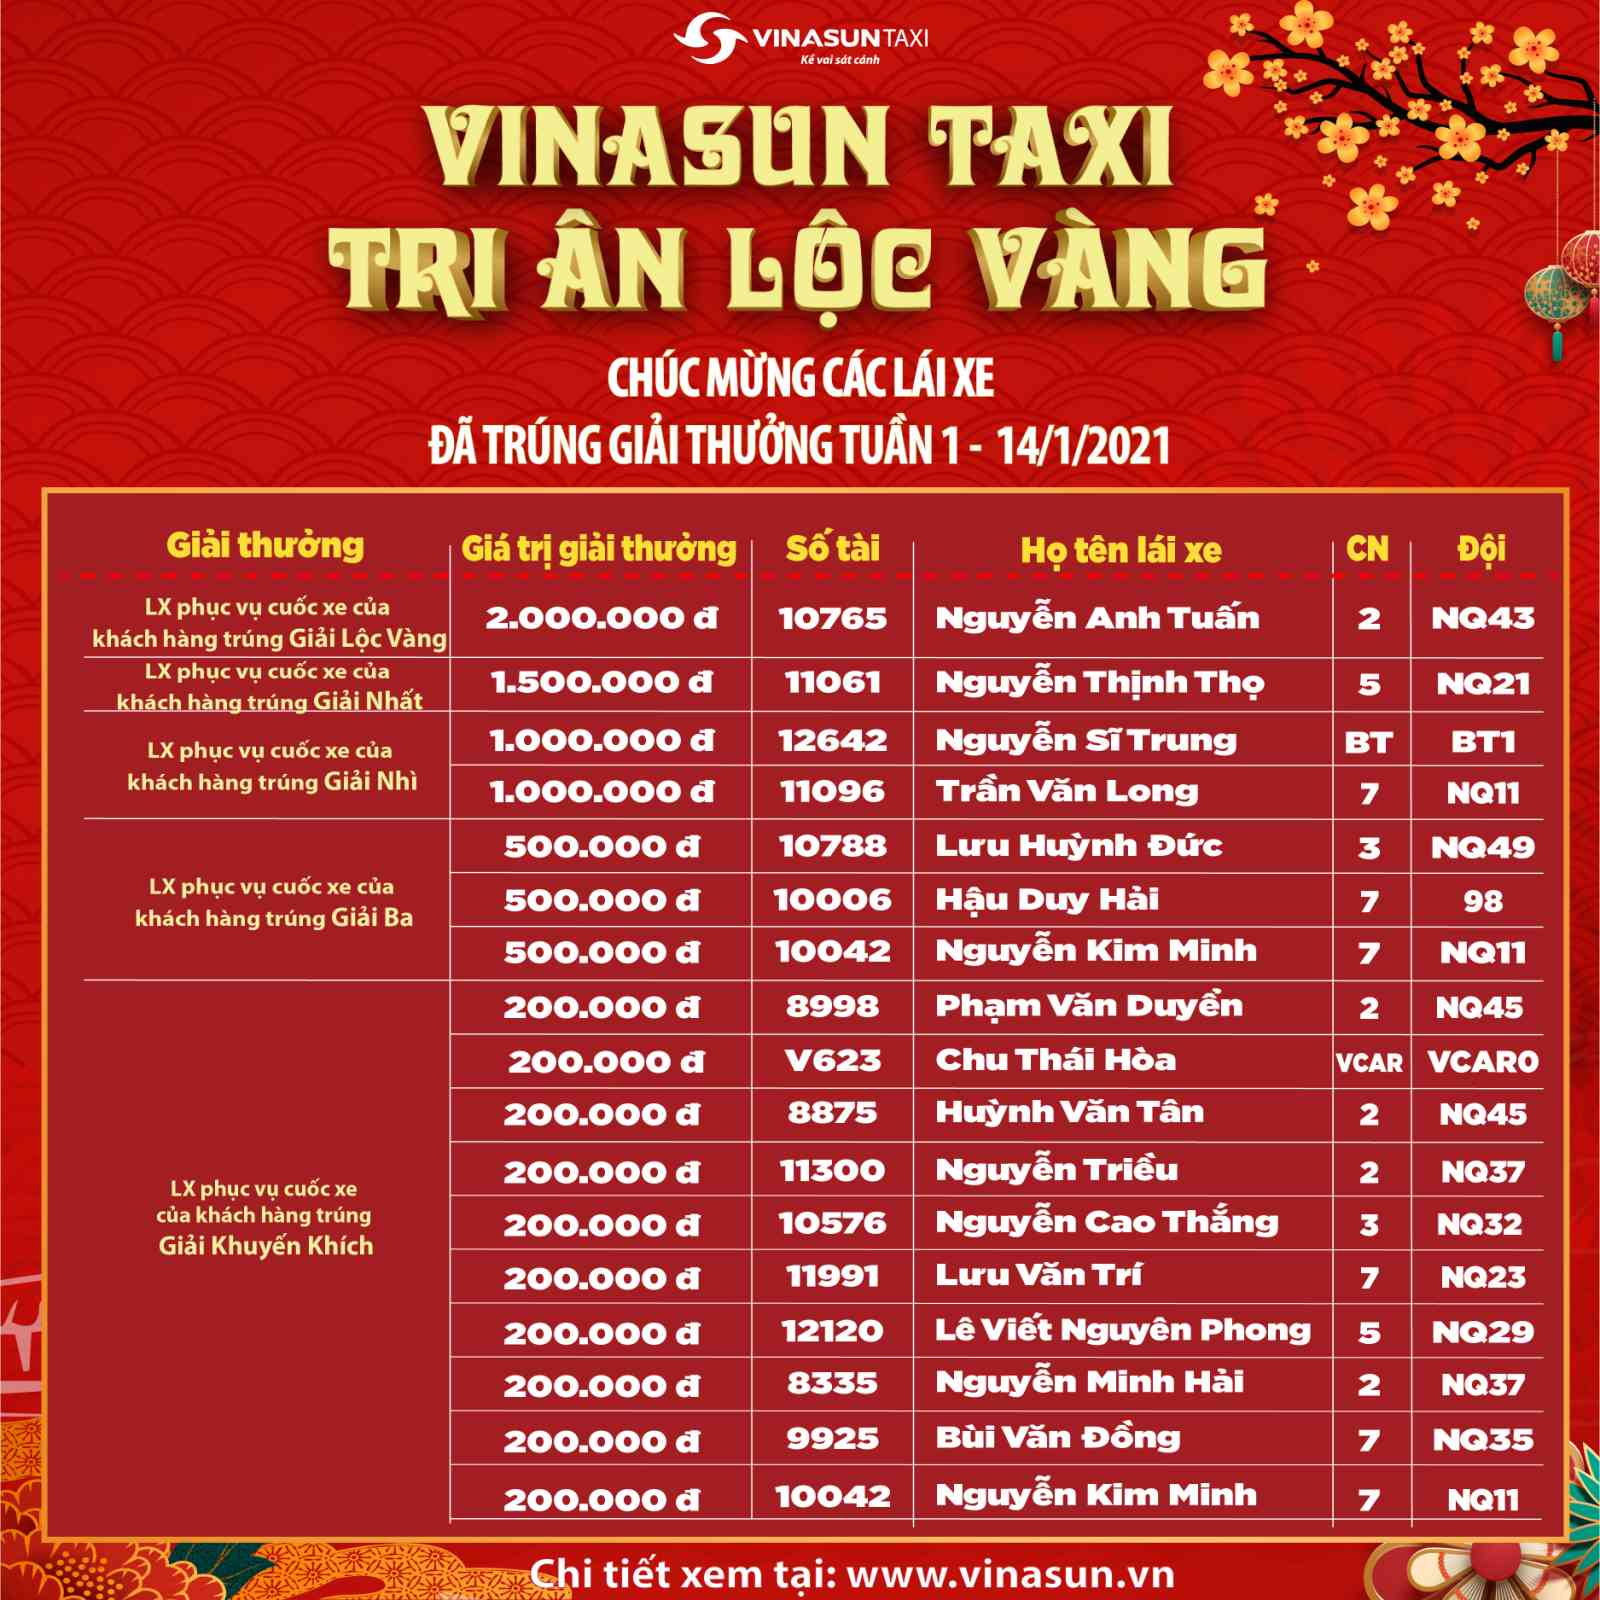 Kết quả Vinasun Taxi - Tri ân lộc vàng dành cho LÁI XE tuần 1